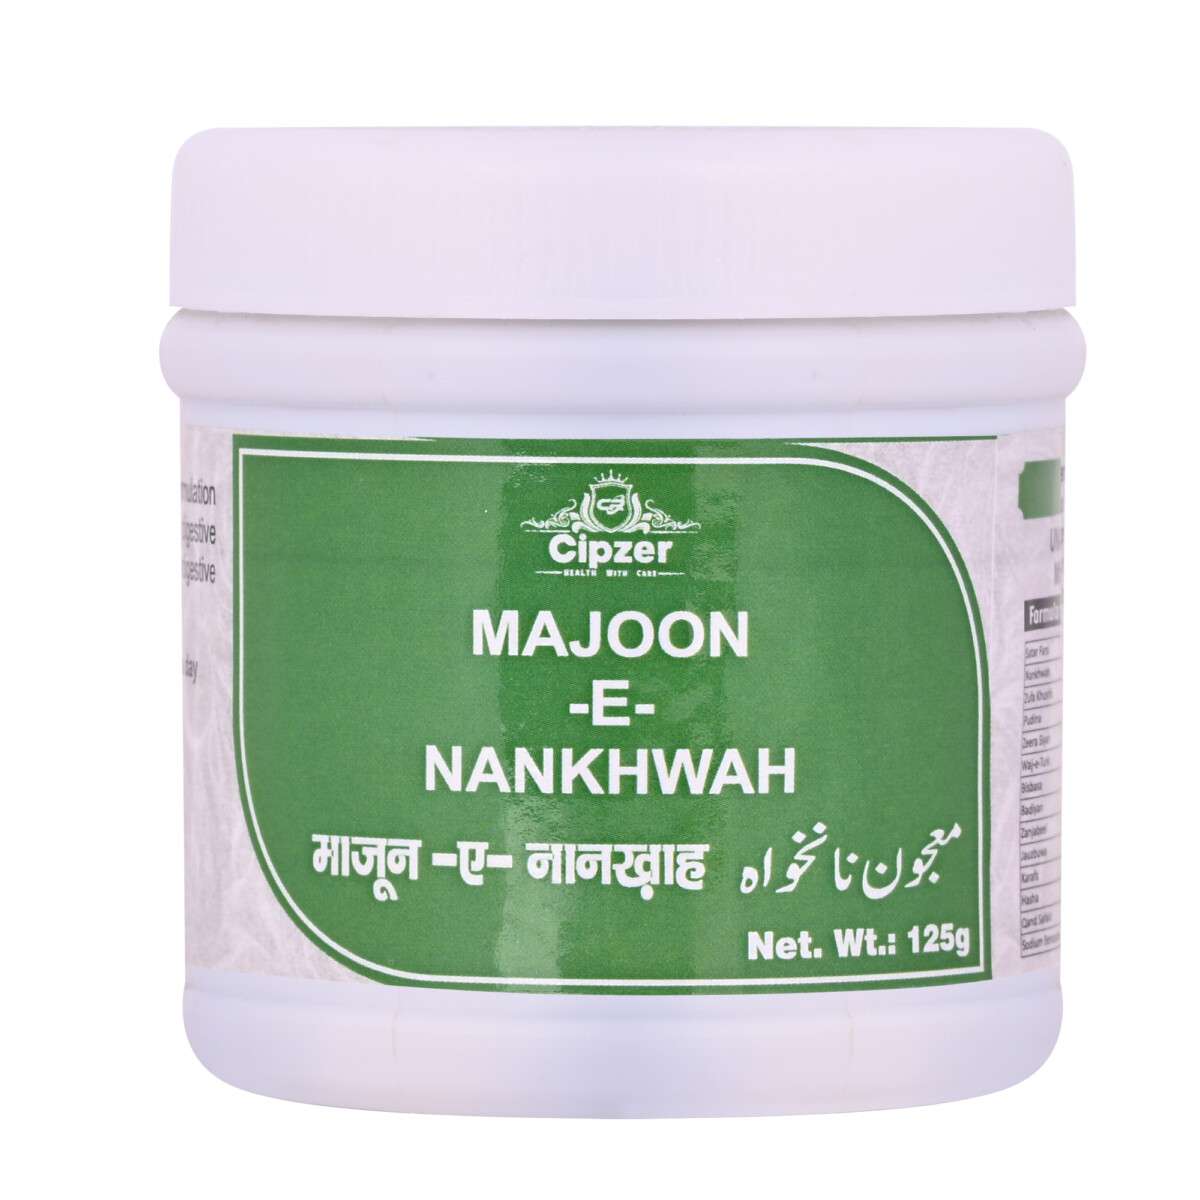 Cipzer Majoon-e-Nankhwah